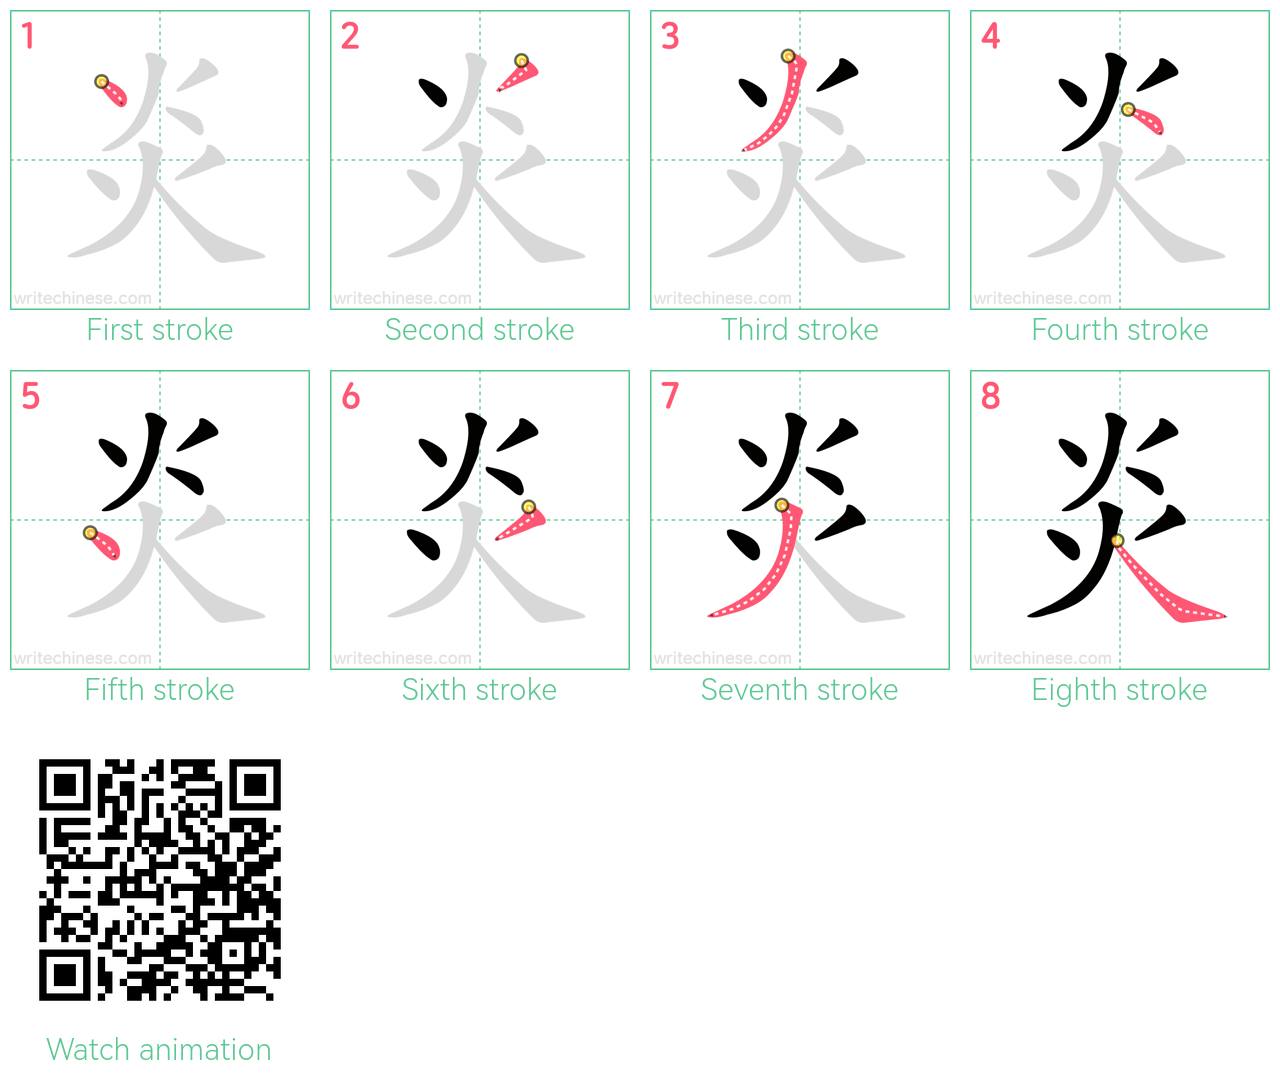 炎 step-by-step stroke order diagrams